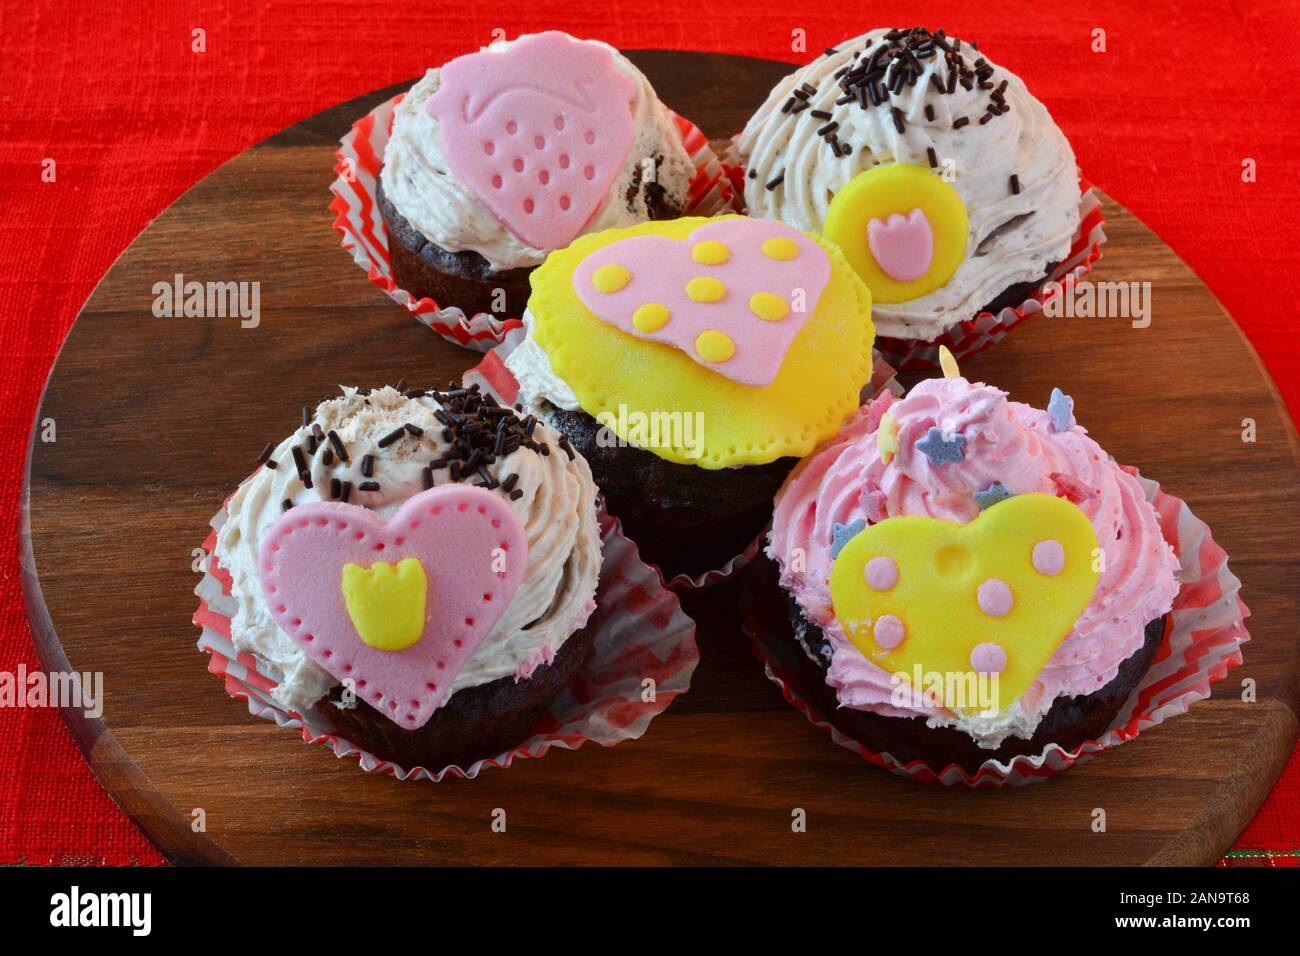 Liebe Muffins, bunten Cupcakes mit Marzipan Herzen, auf Holz- runde Untertasse über den roten Tischdecke serviert dekoriert, Seitenansicht Stockfoto